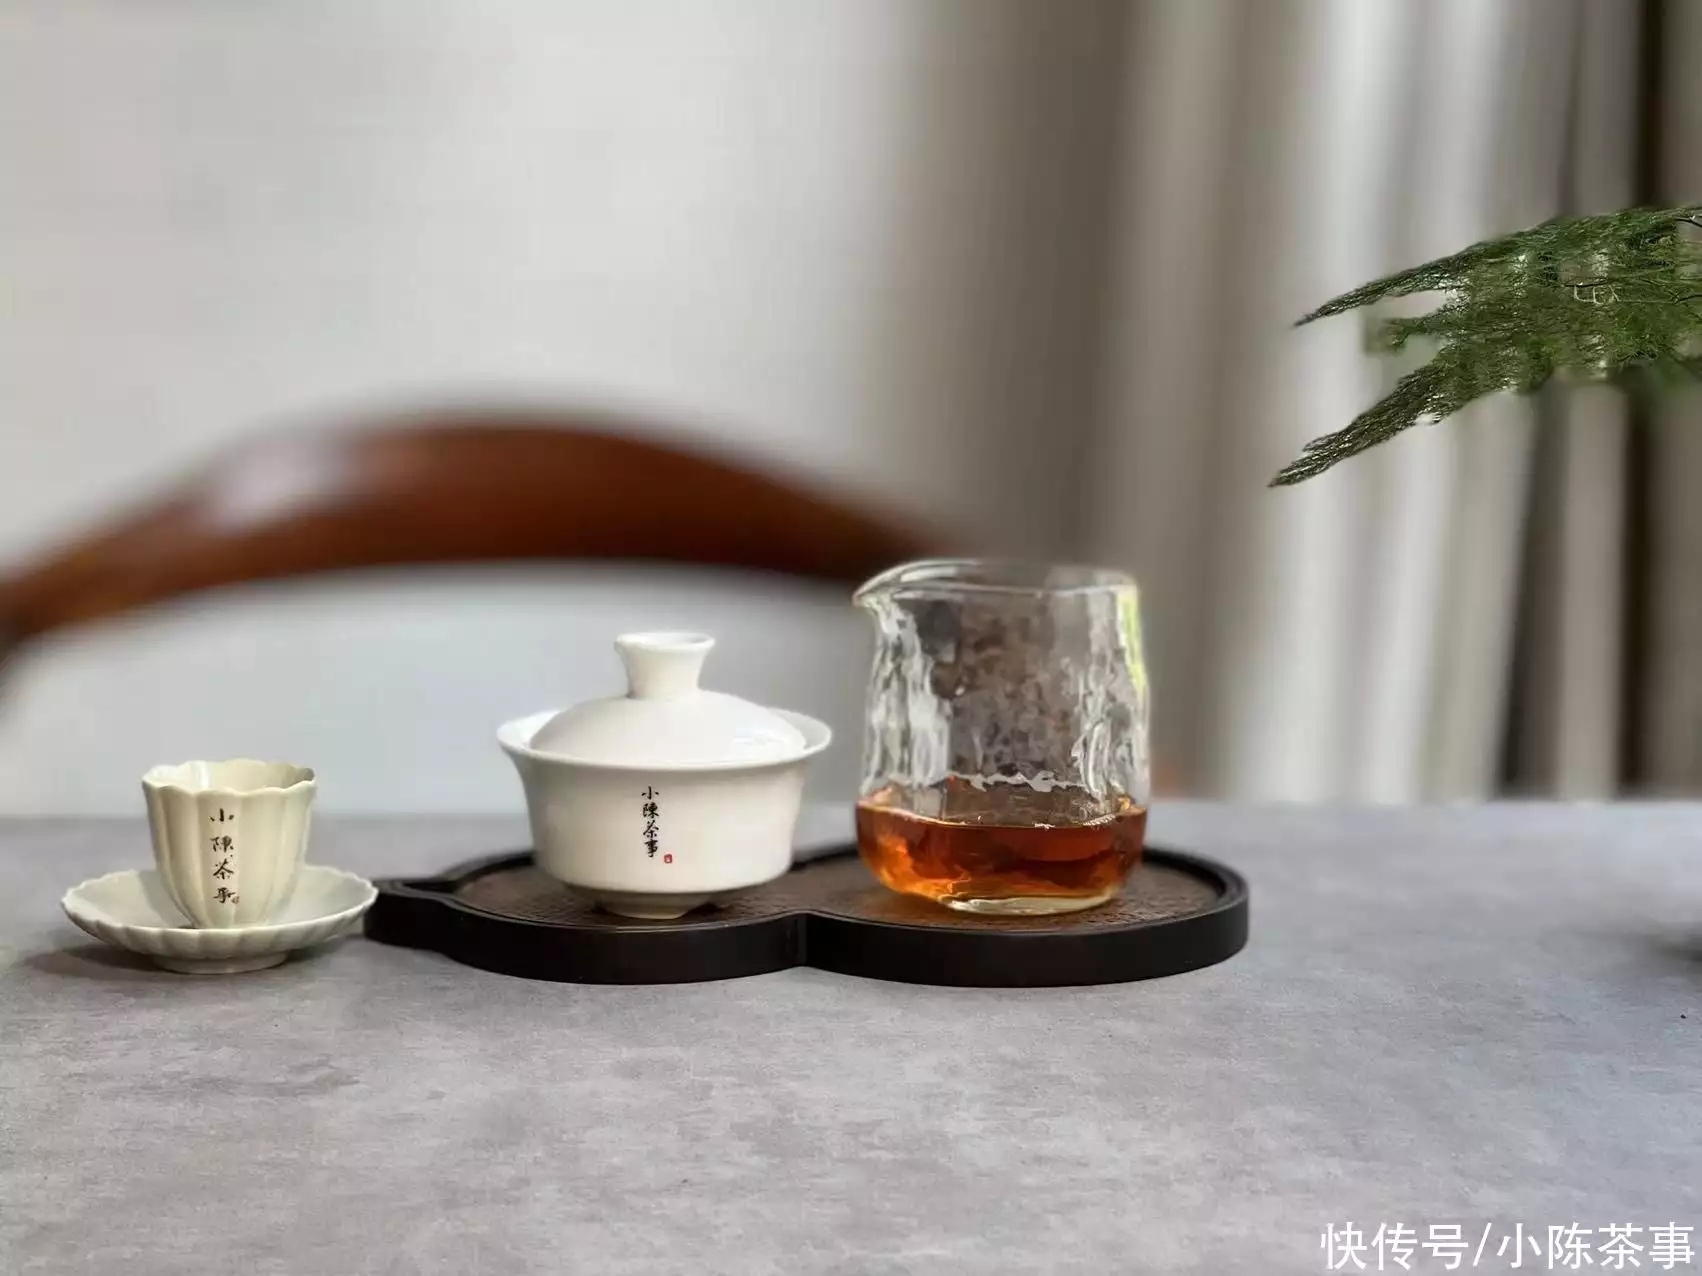 速看（红茶绿茶白茶普洱茶各自功用）绿茶、红茶、白茶，绿茶、白茶、红茶、普洱茶，哪些需要醒茶？哪些可以不用醒茶？日本人爱骂的“八嘎呀路”，翻成中文是什么含义？原来是两个词，红茶指的是哪些茶，